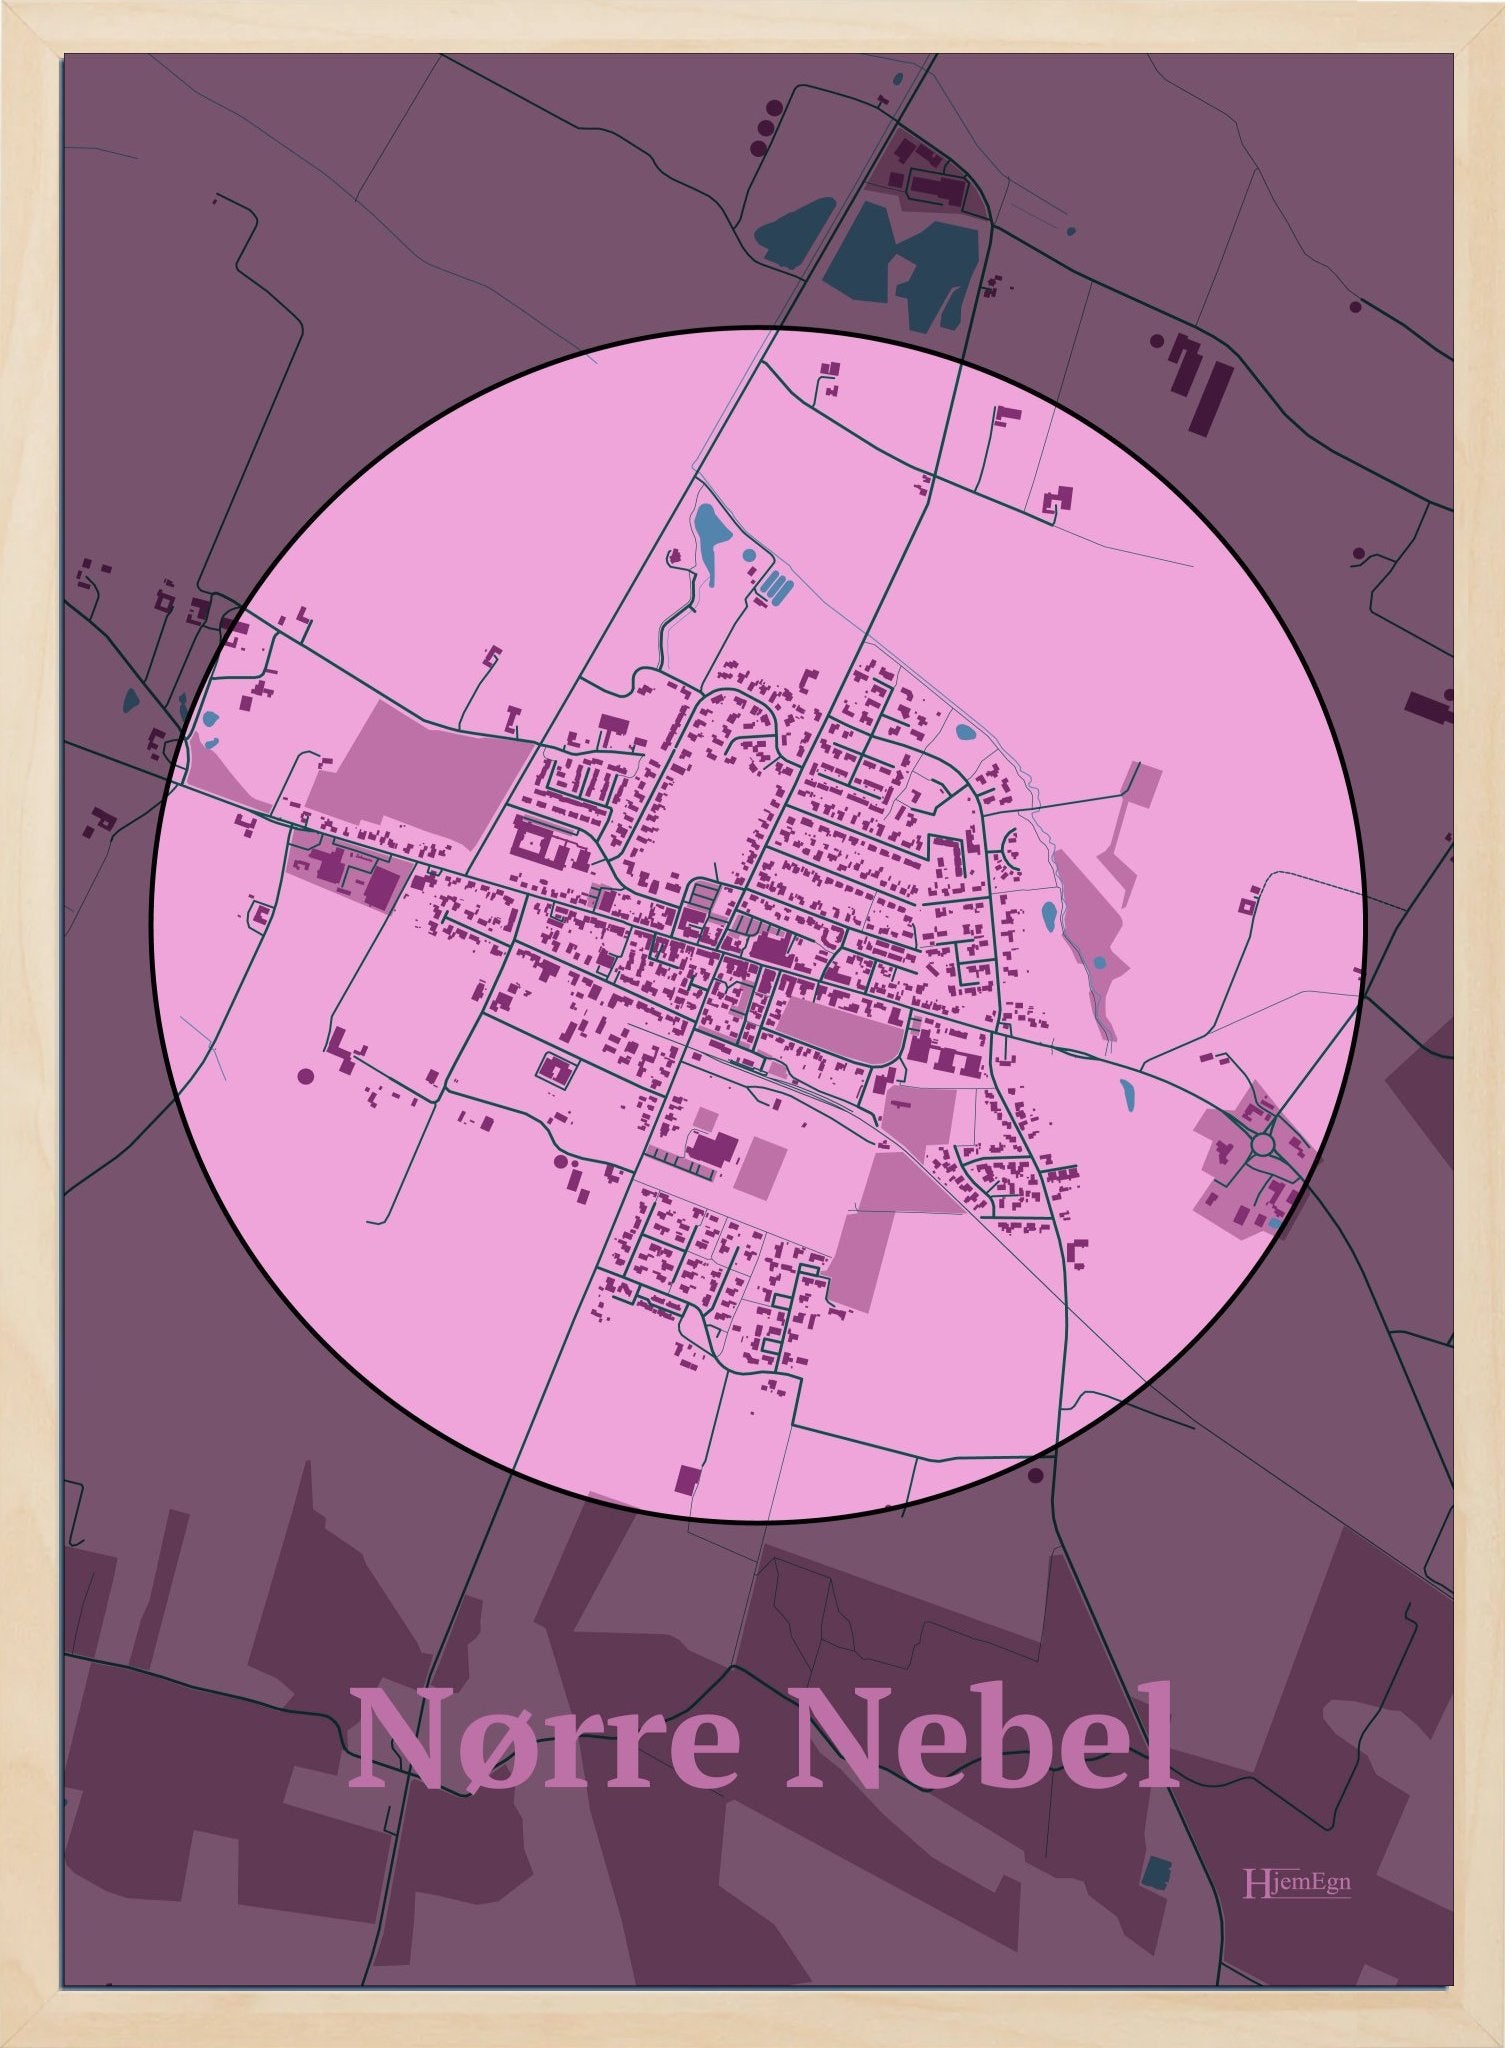 Nørre Nebel plakat i farve pastel rød og HjemEgn.dk design centrum. Design bykort for Nørre Nebel